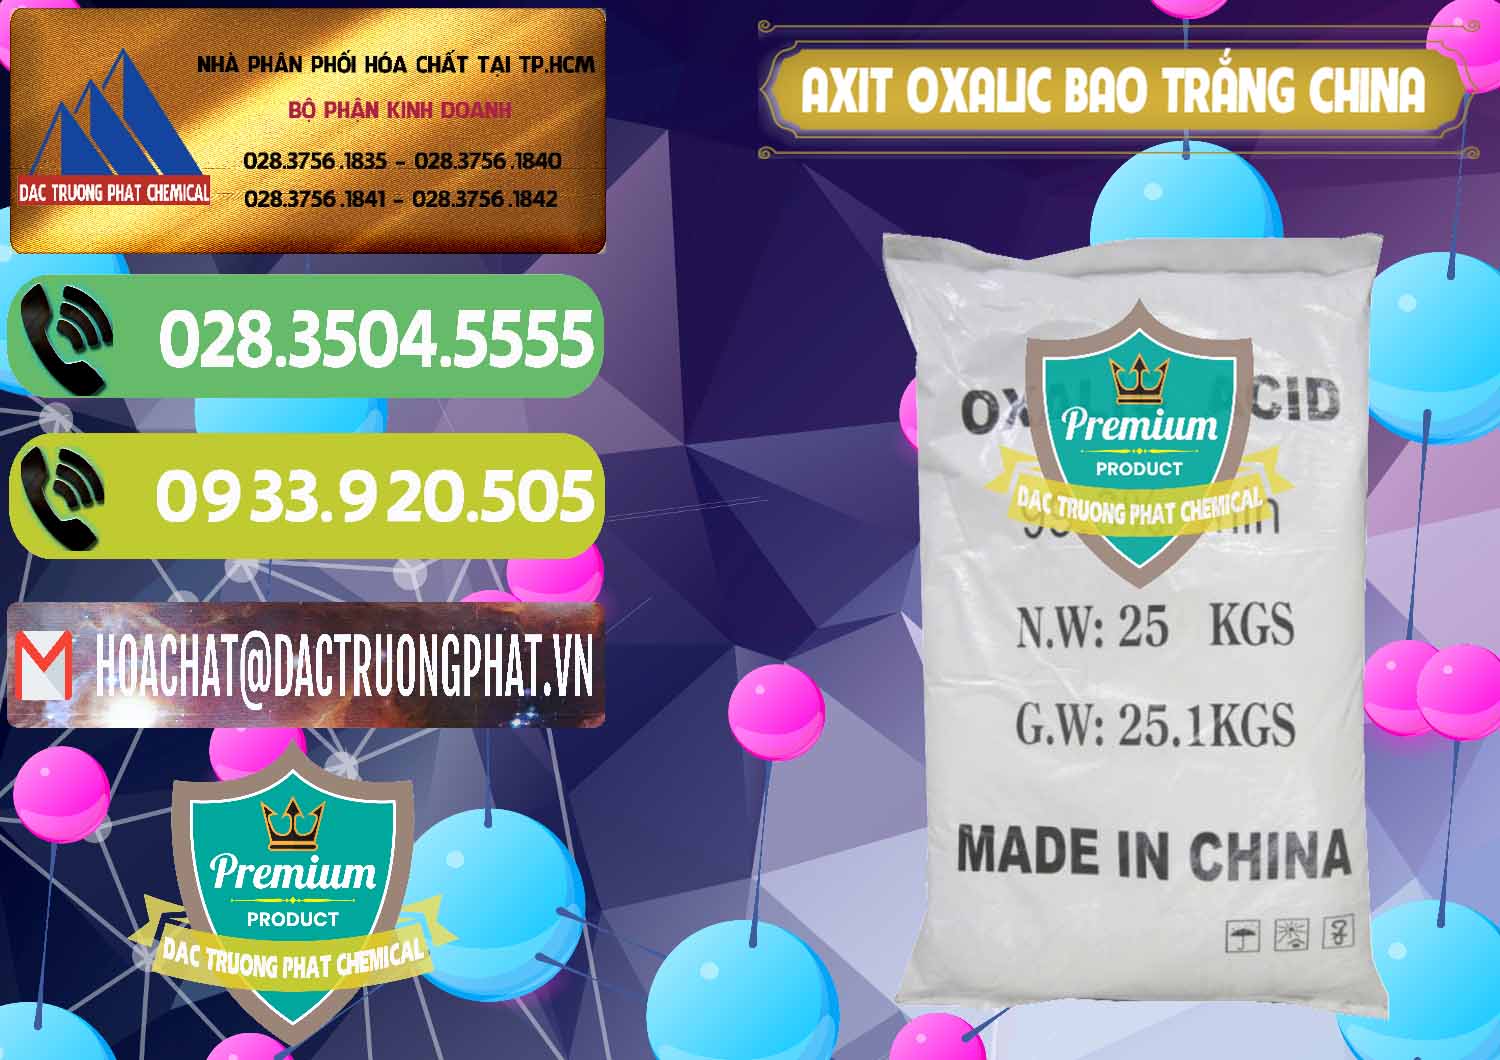 Cung cấp _ bán Acid Oxalic – Axit Oxalic 99.6% Bao Trắng Trung Quốc China - 0270 - Cty chuyên kinh doanh & phân phối hóa chất tại TP.HCM - hoachatmientay.vn